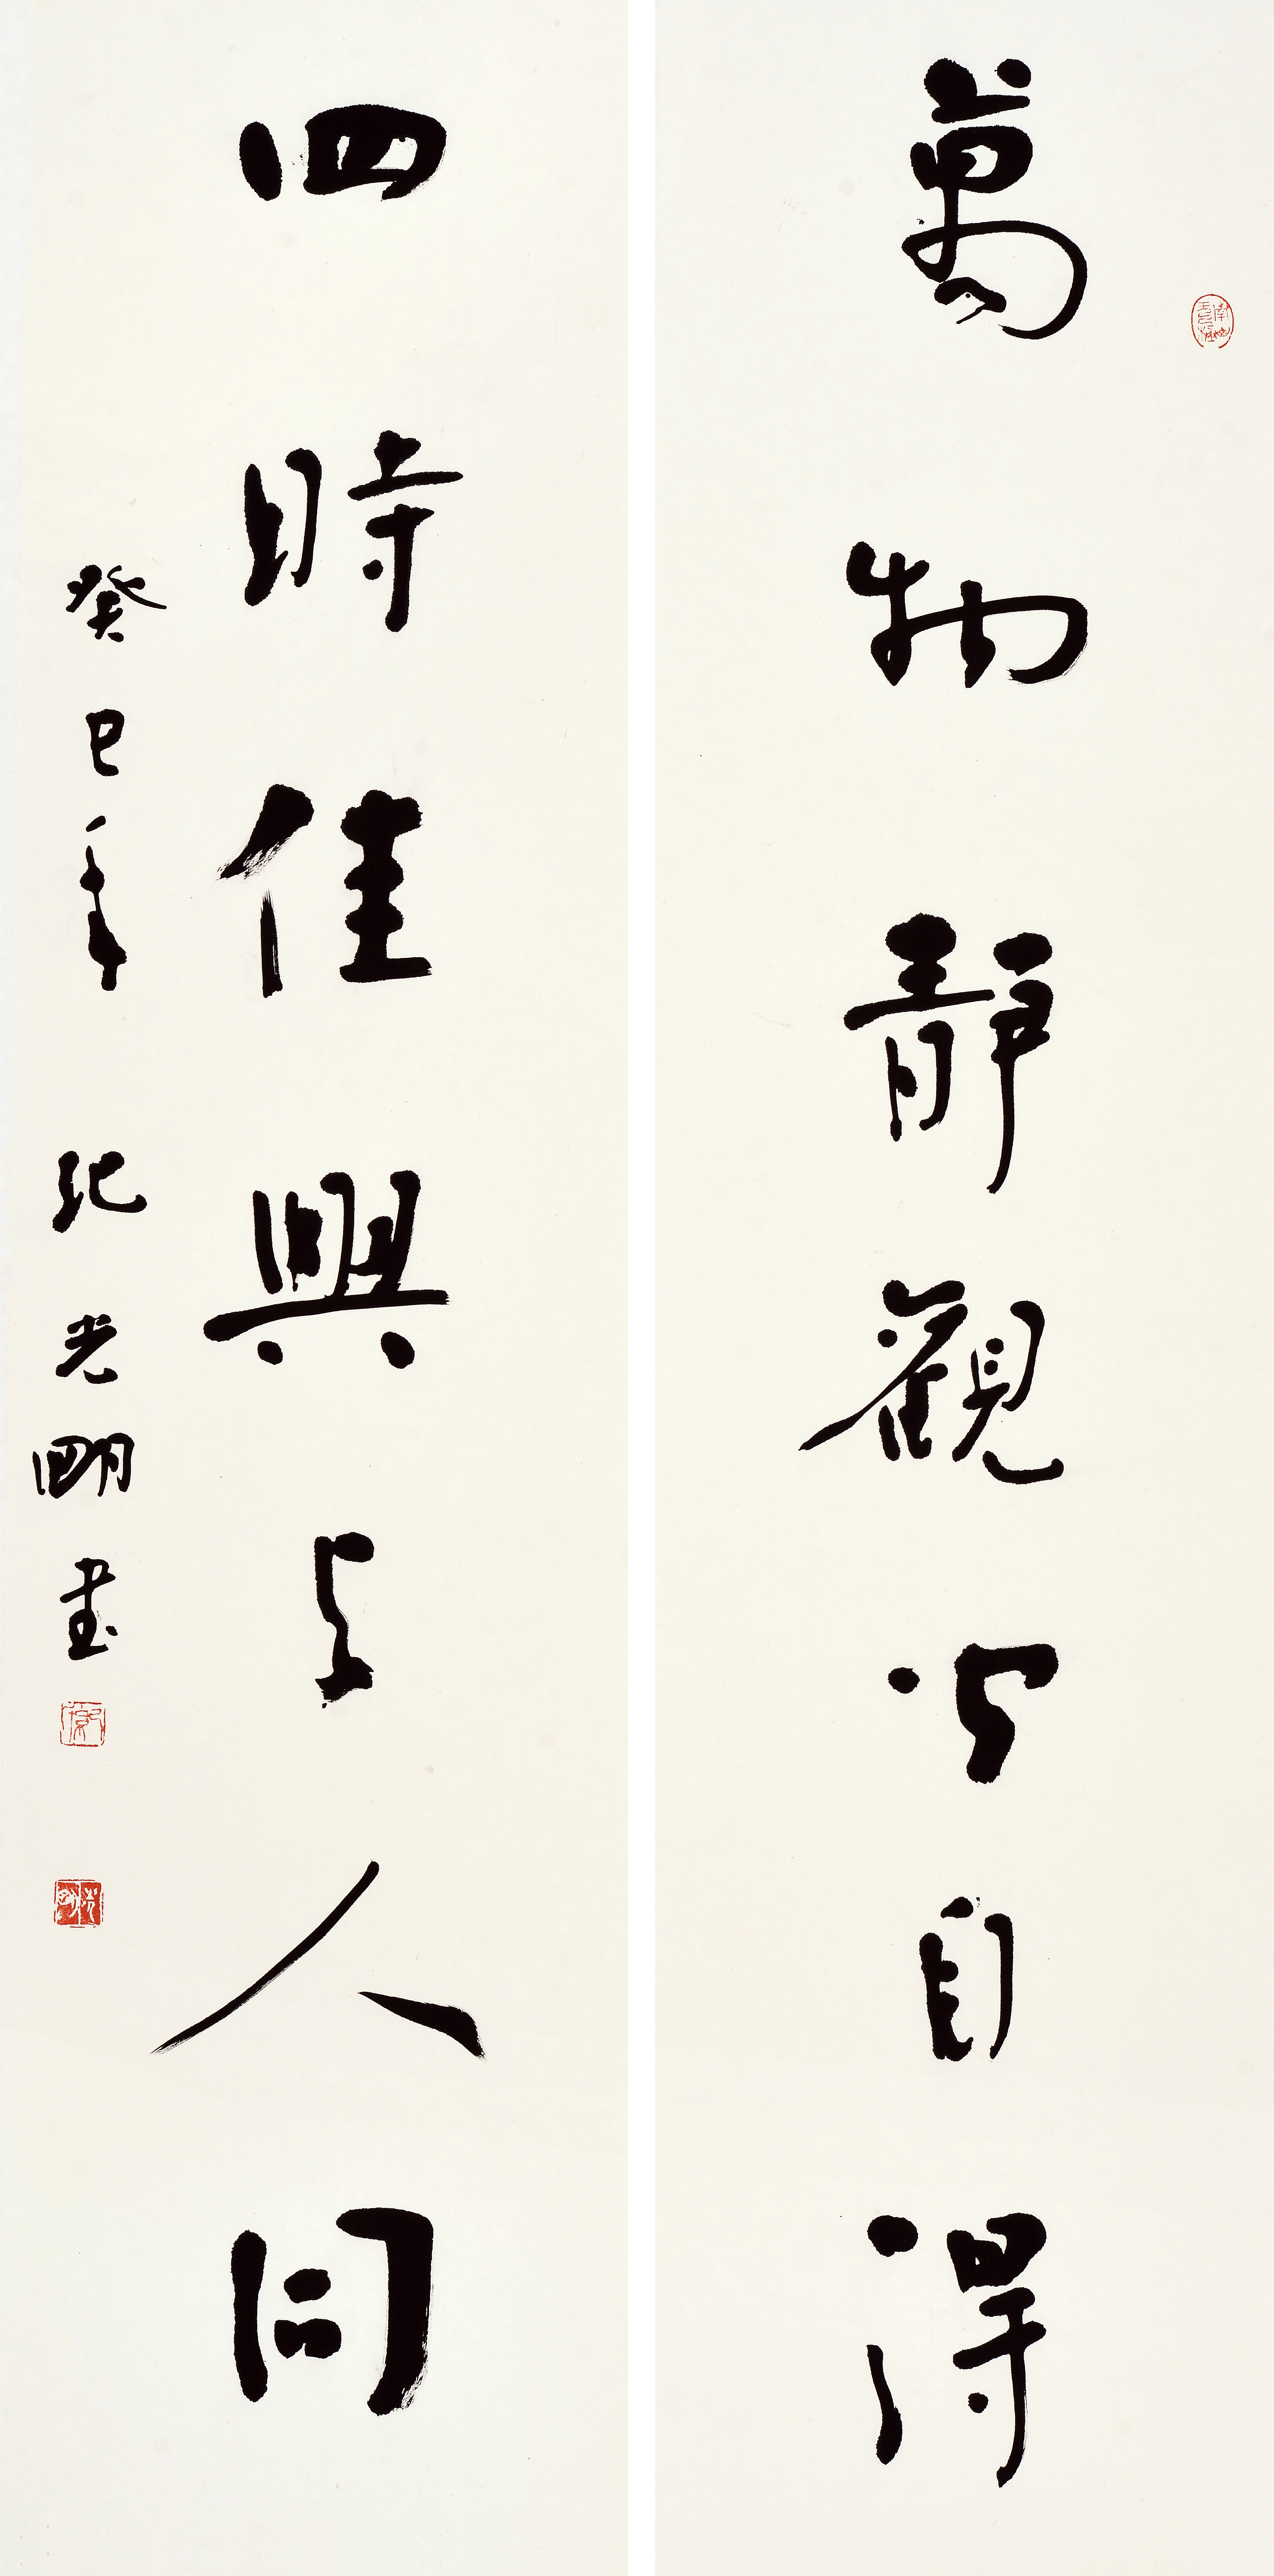 翰墨情怀61纪光明书法小品展11月25日15时在广州云品一堂开幕